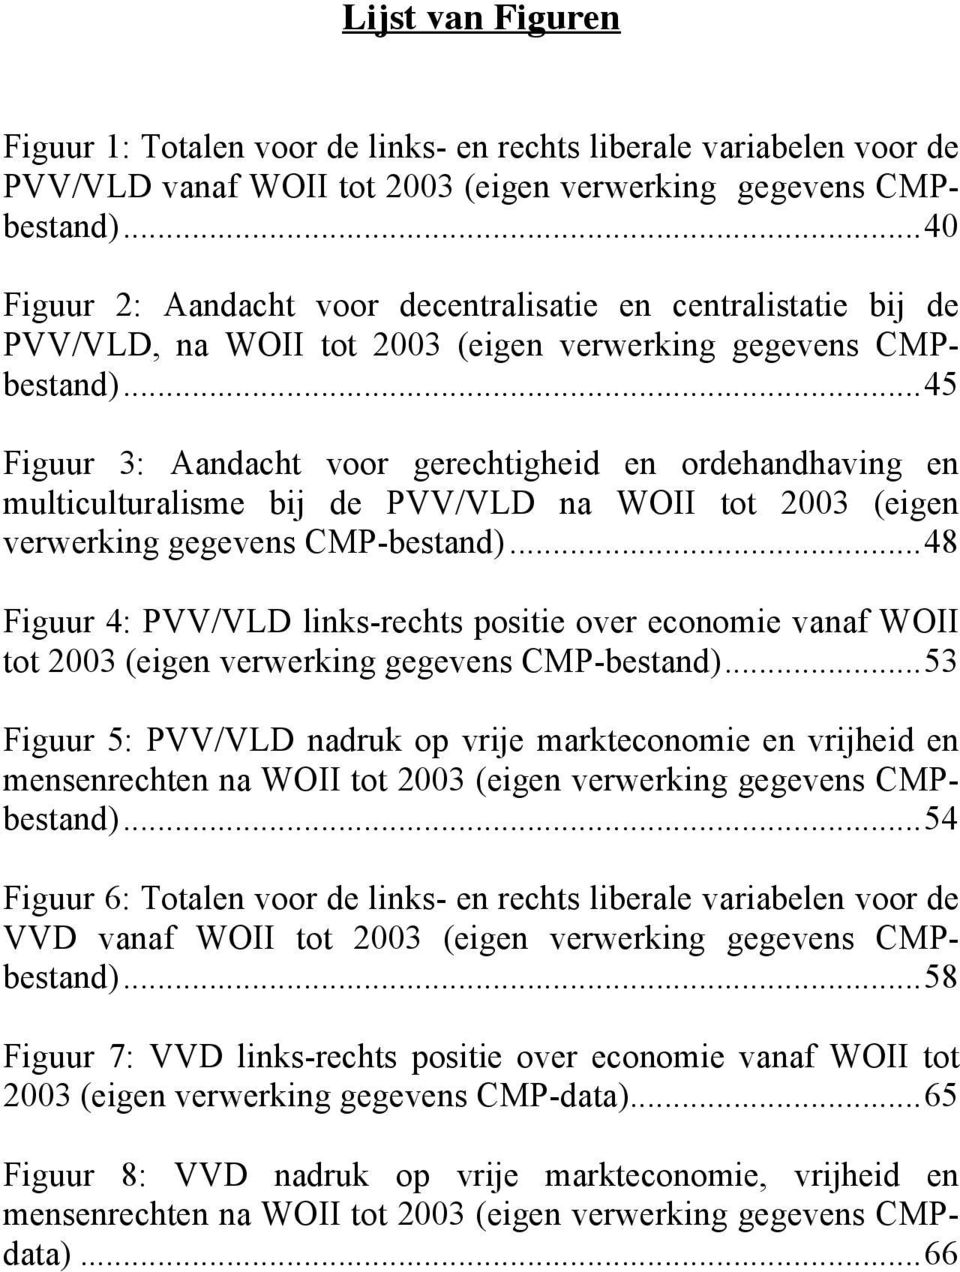 ..45 Figuur 3: Aandacht voor gerechtigheid en ordehandhaving en multiculturalisme bij de PVV/VLD na WOII tot 2003 (eigen verwerking gegevens CMP-bestand).